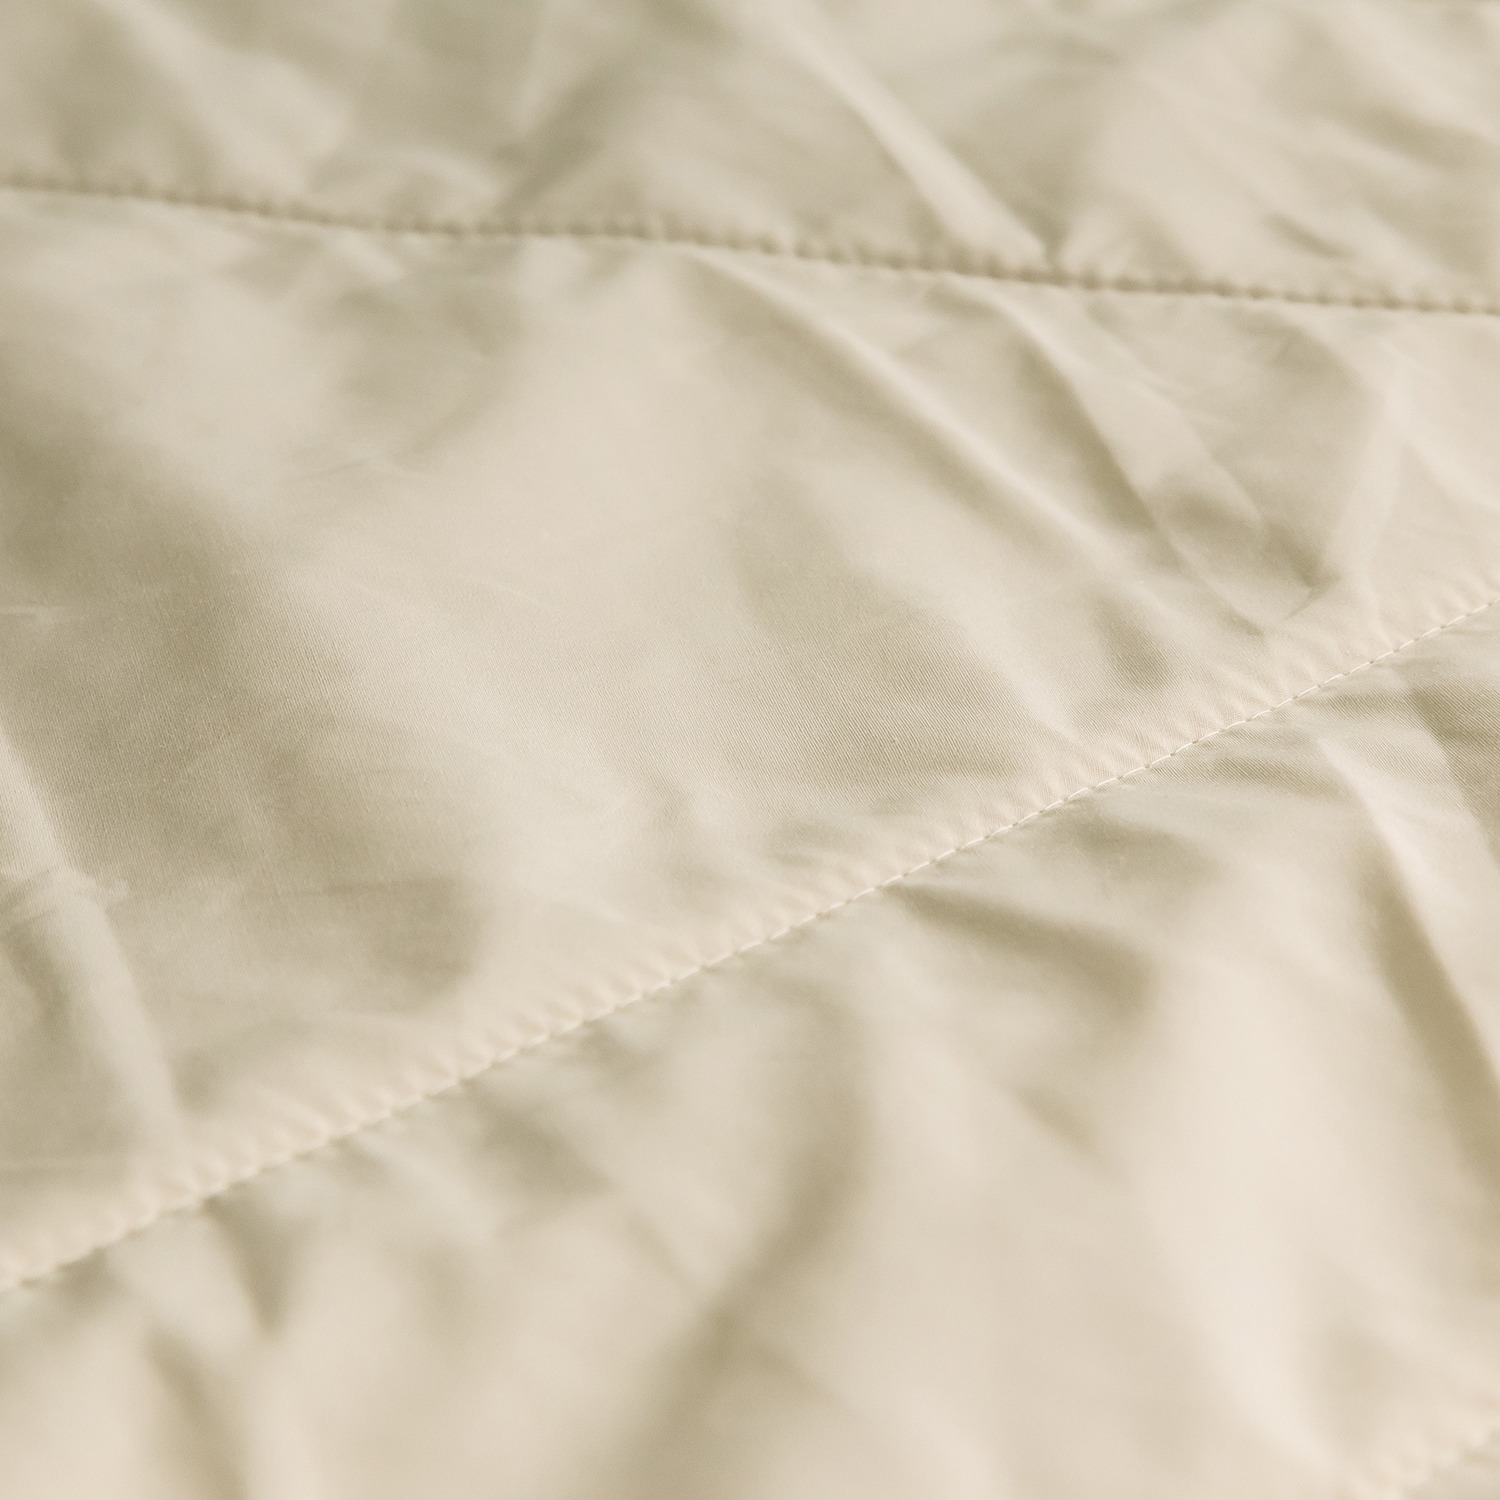 ＜クイーン＞
快眠博士
厳選素材と感動のぬくもり
“プレミアムソフゥール　タスマニアン　スリージー”
掛け毛布